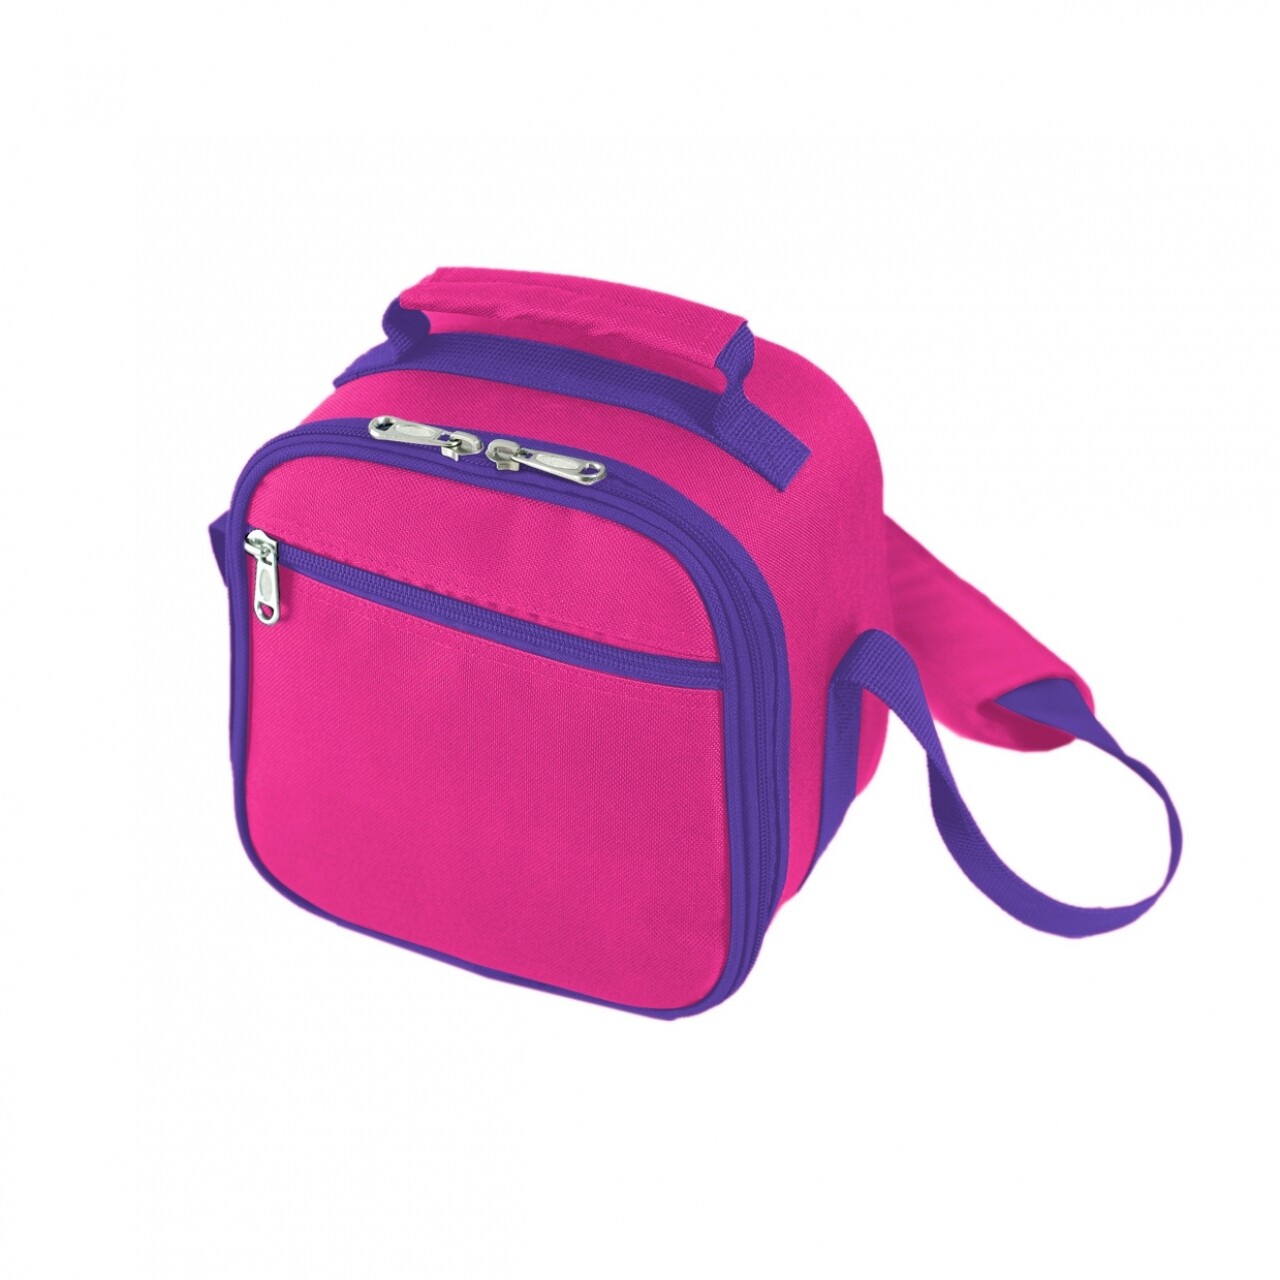 Pink Hőszigetelt táska és ételtároló , 12.5 x 20 x 20 cm, műanyag/poliészter/PEVA, rózsaszín/kék